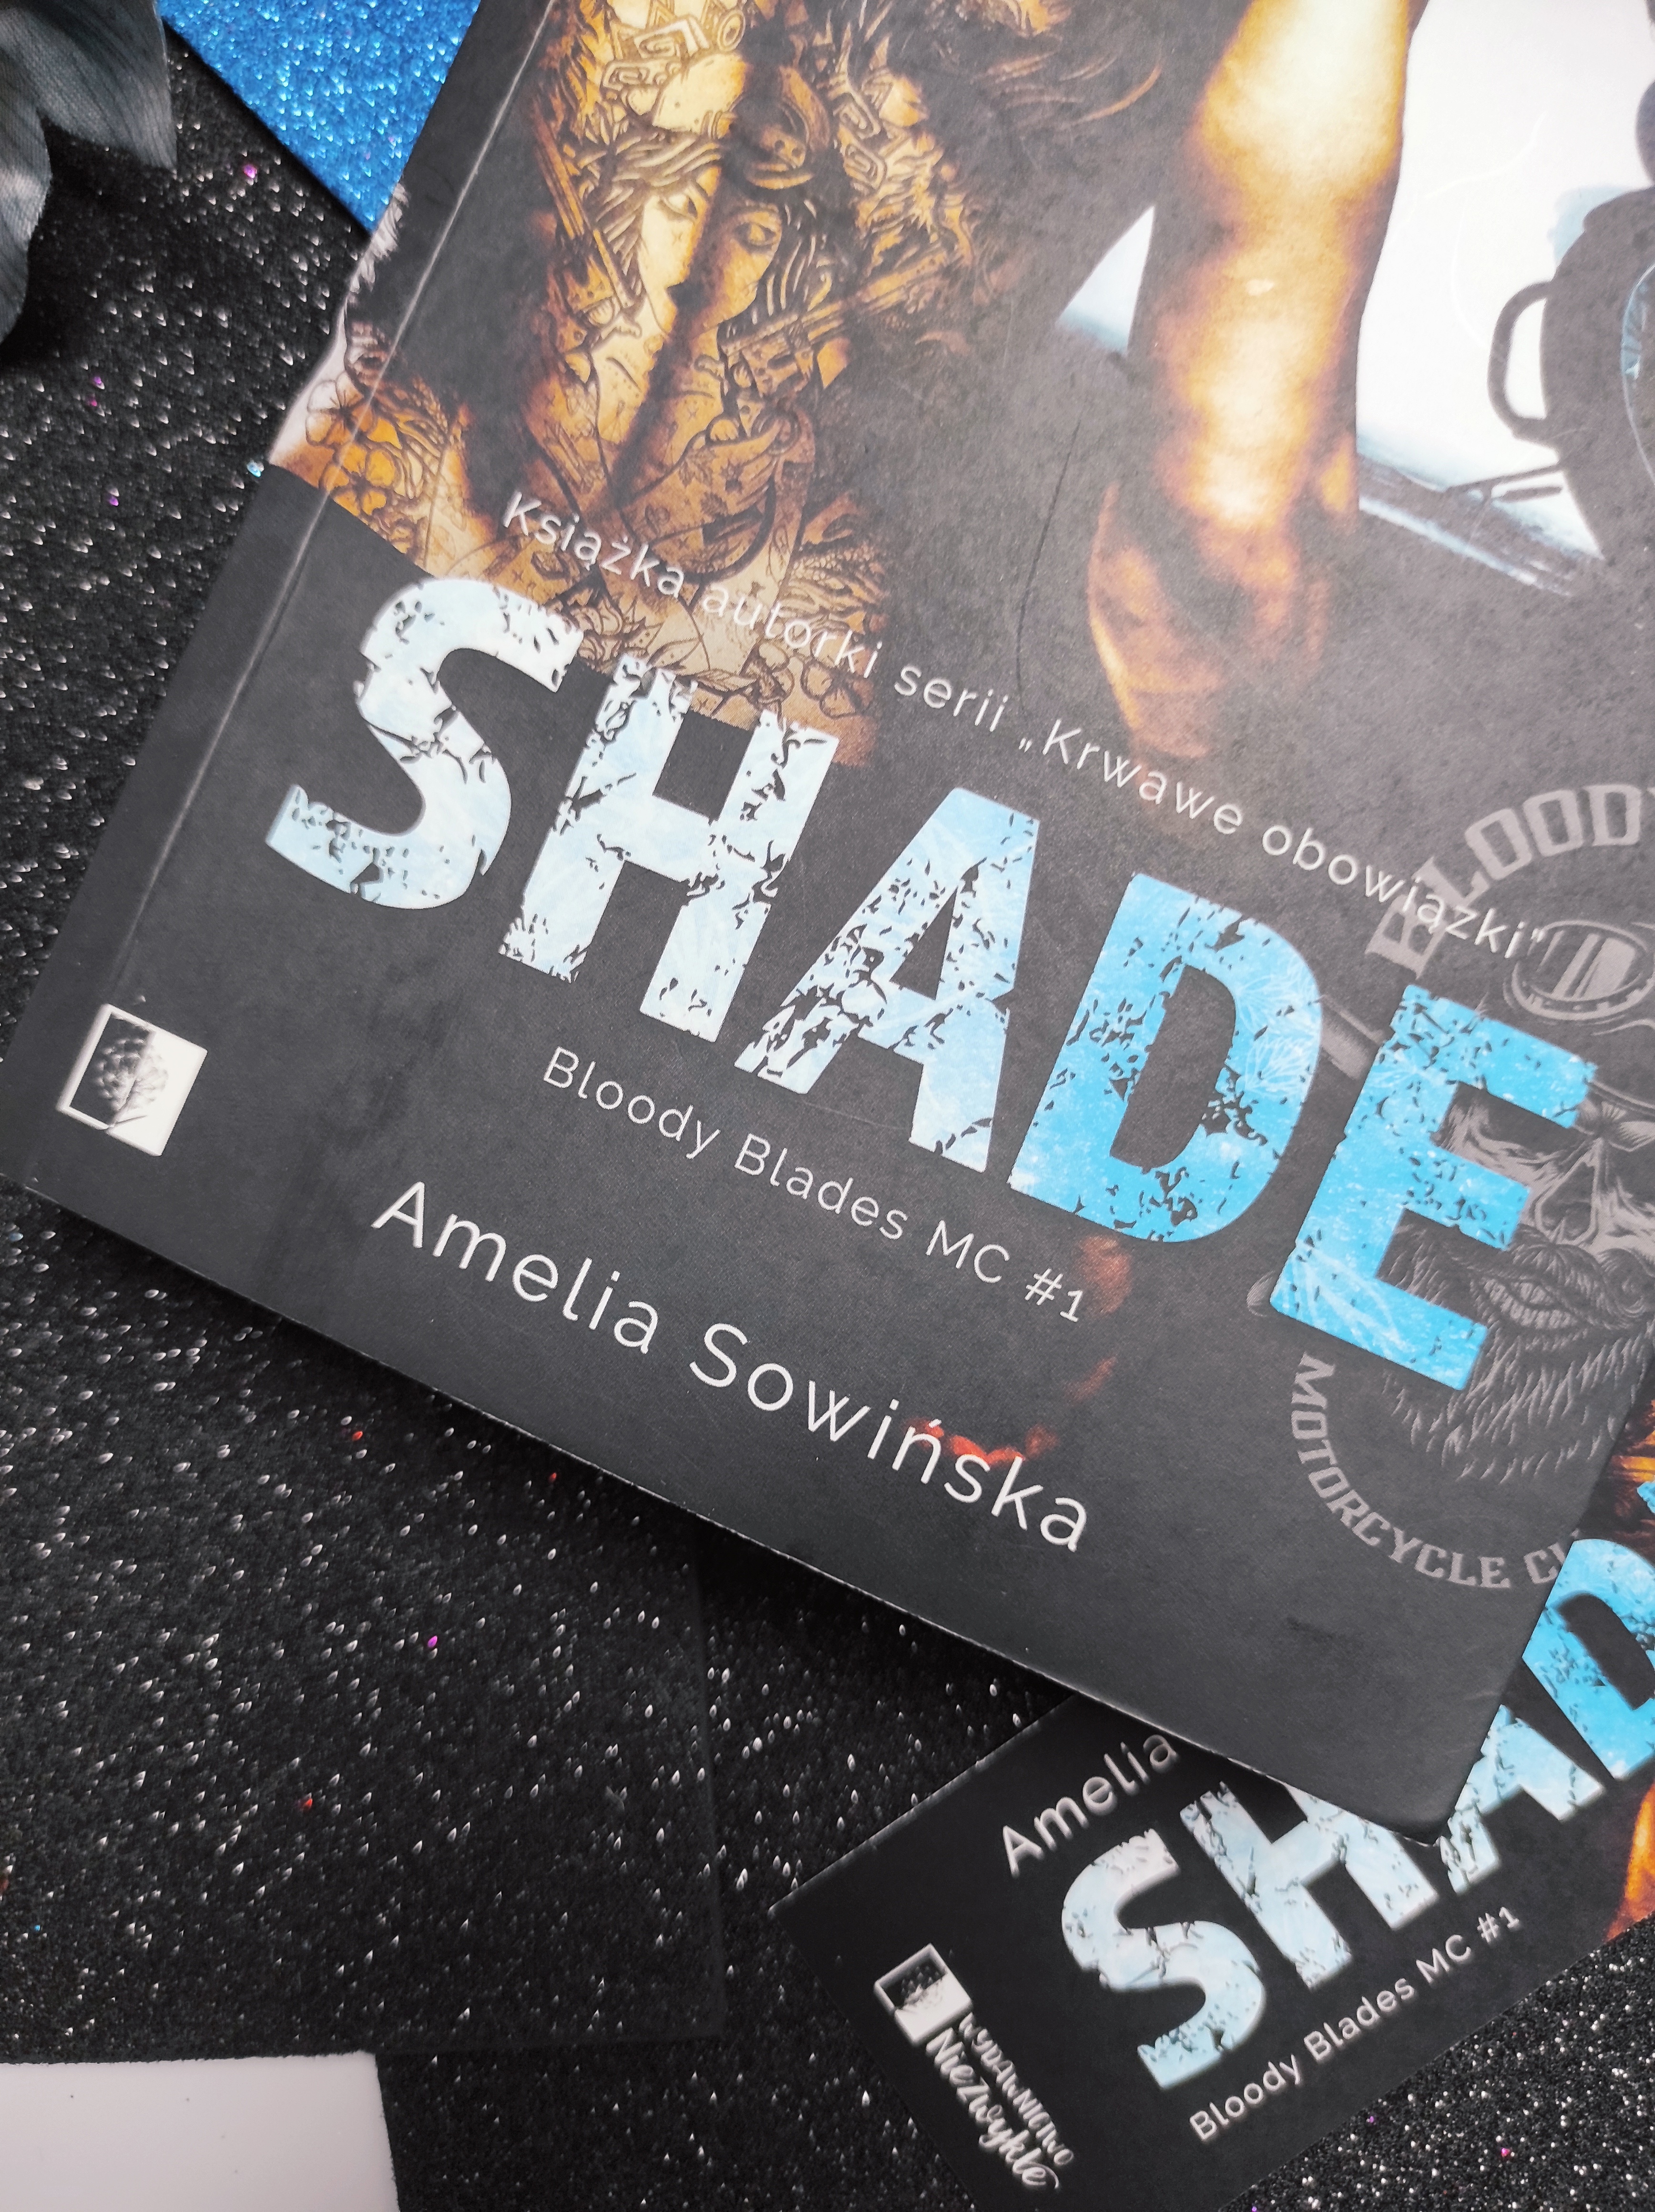 "Shade" Amelia Sowińska - recenzja